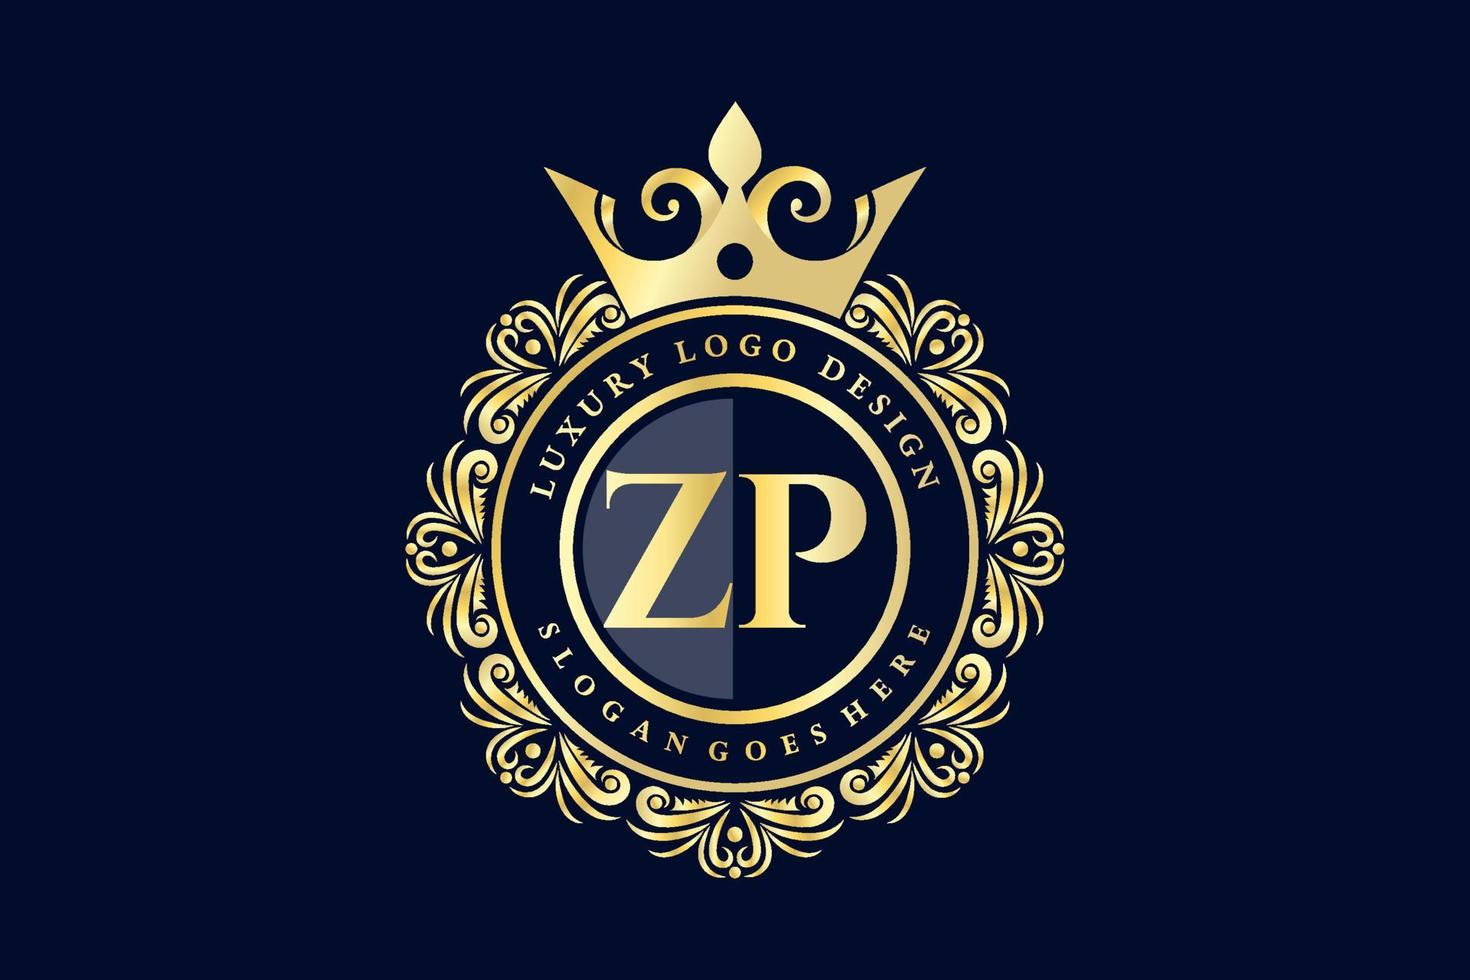 zp letra inicial oro caligráfico femenino floral dibujado a mano monograma heráldico antiguo estilo vintage diseño de logotipo de lujo vector premium